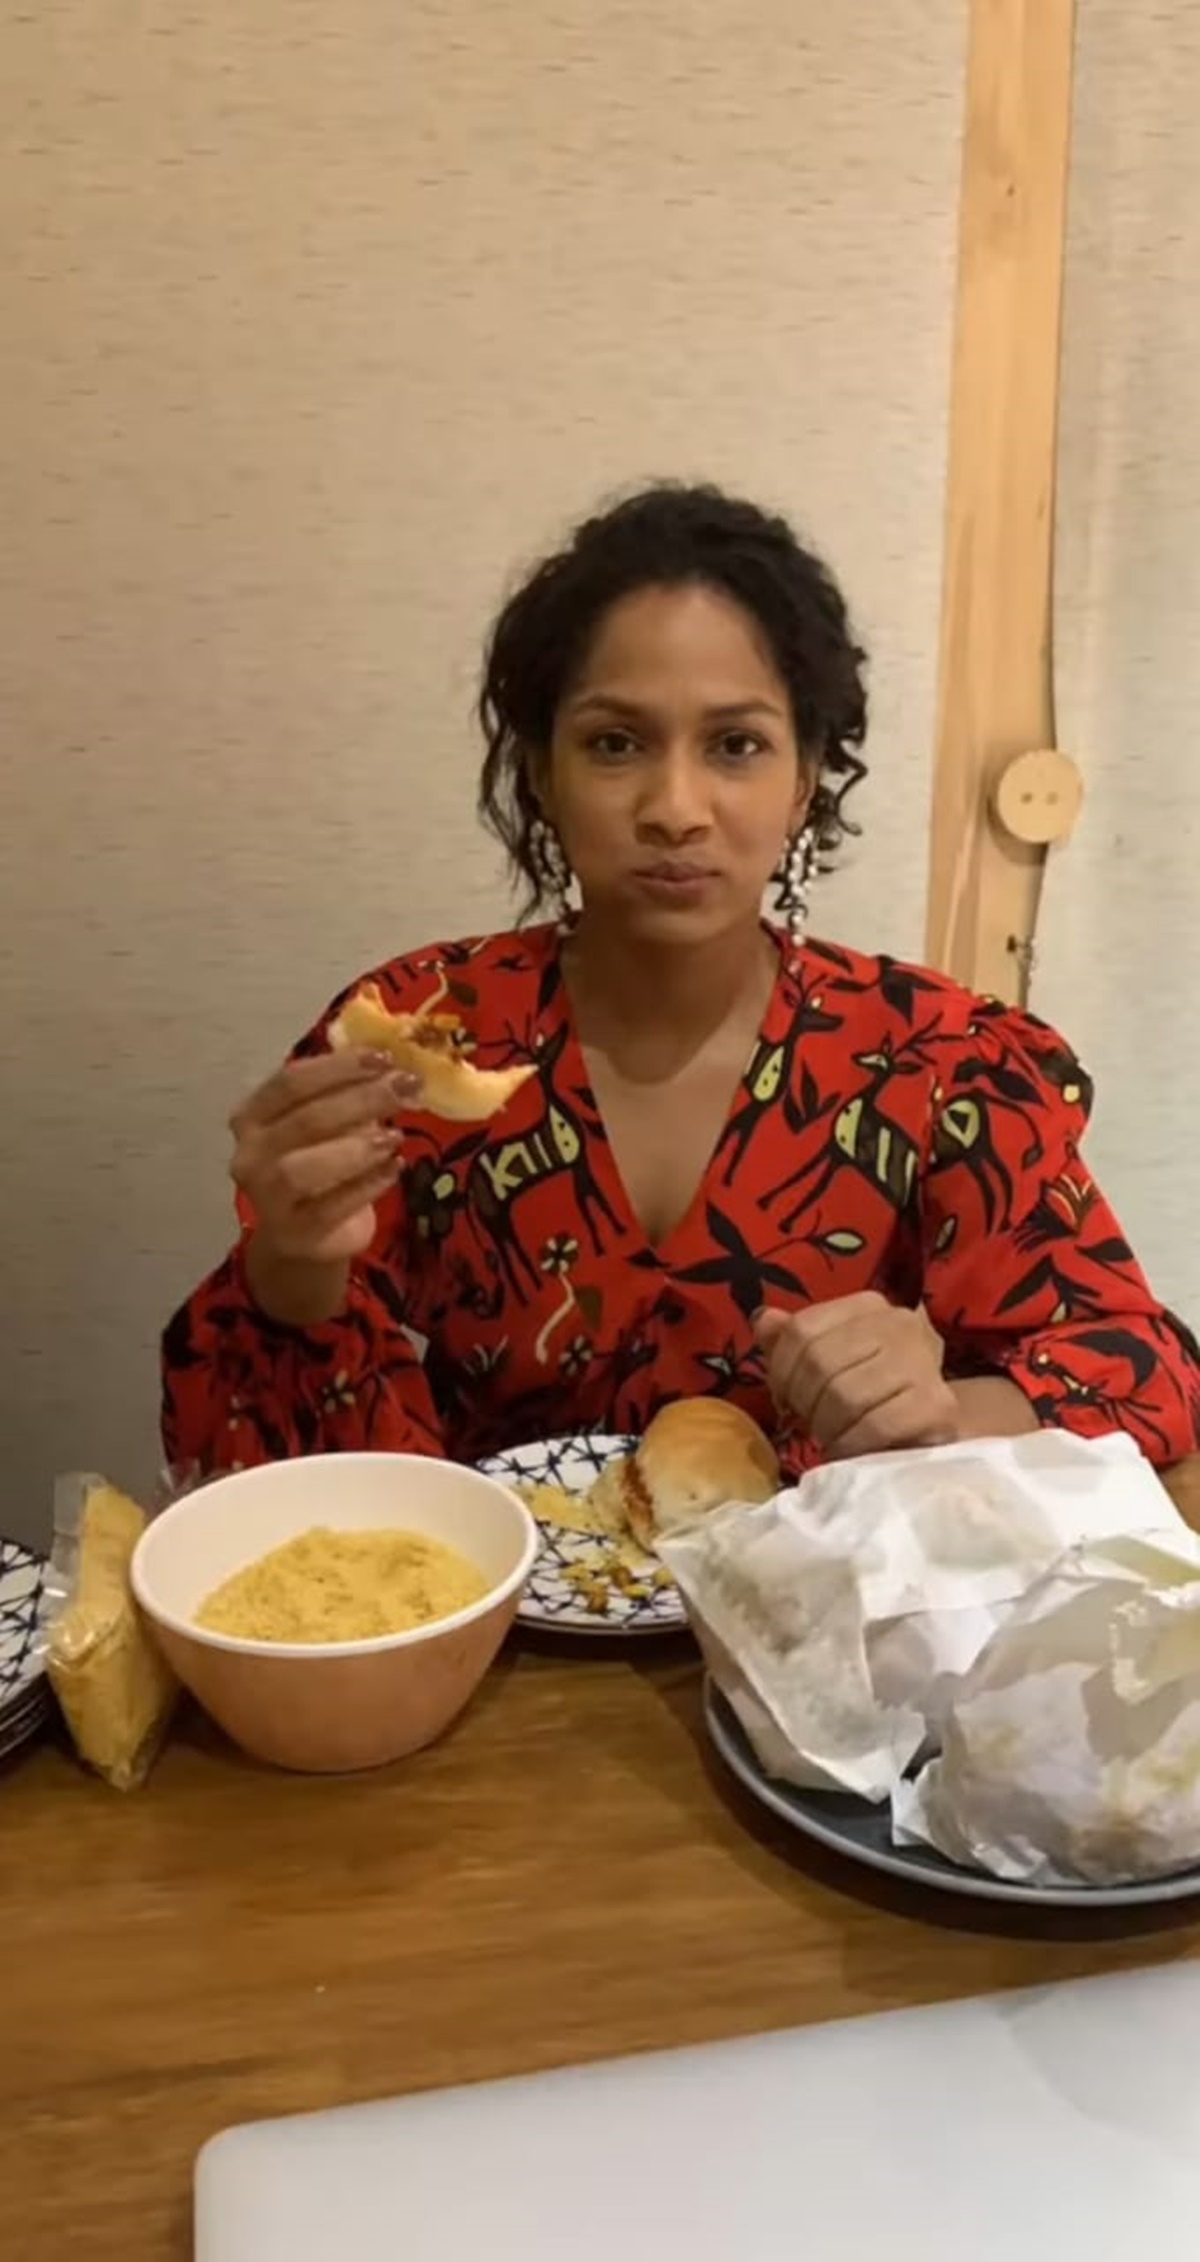 'La comida es vida' para Masaba Gupta; aquí está la prueba